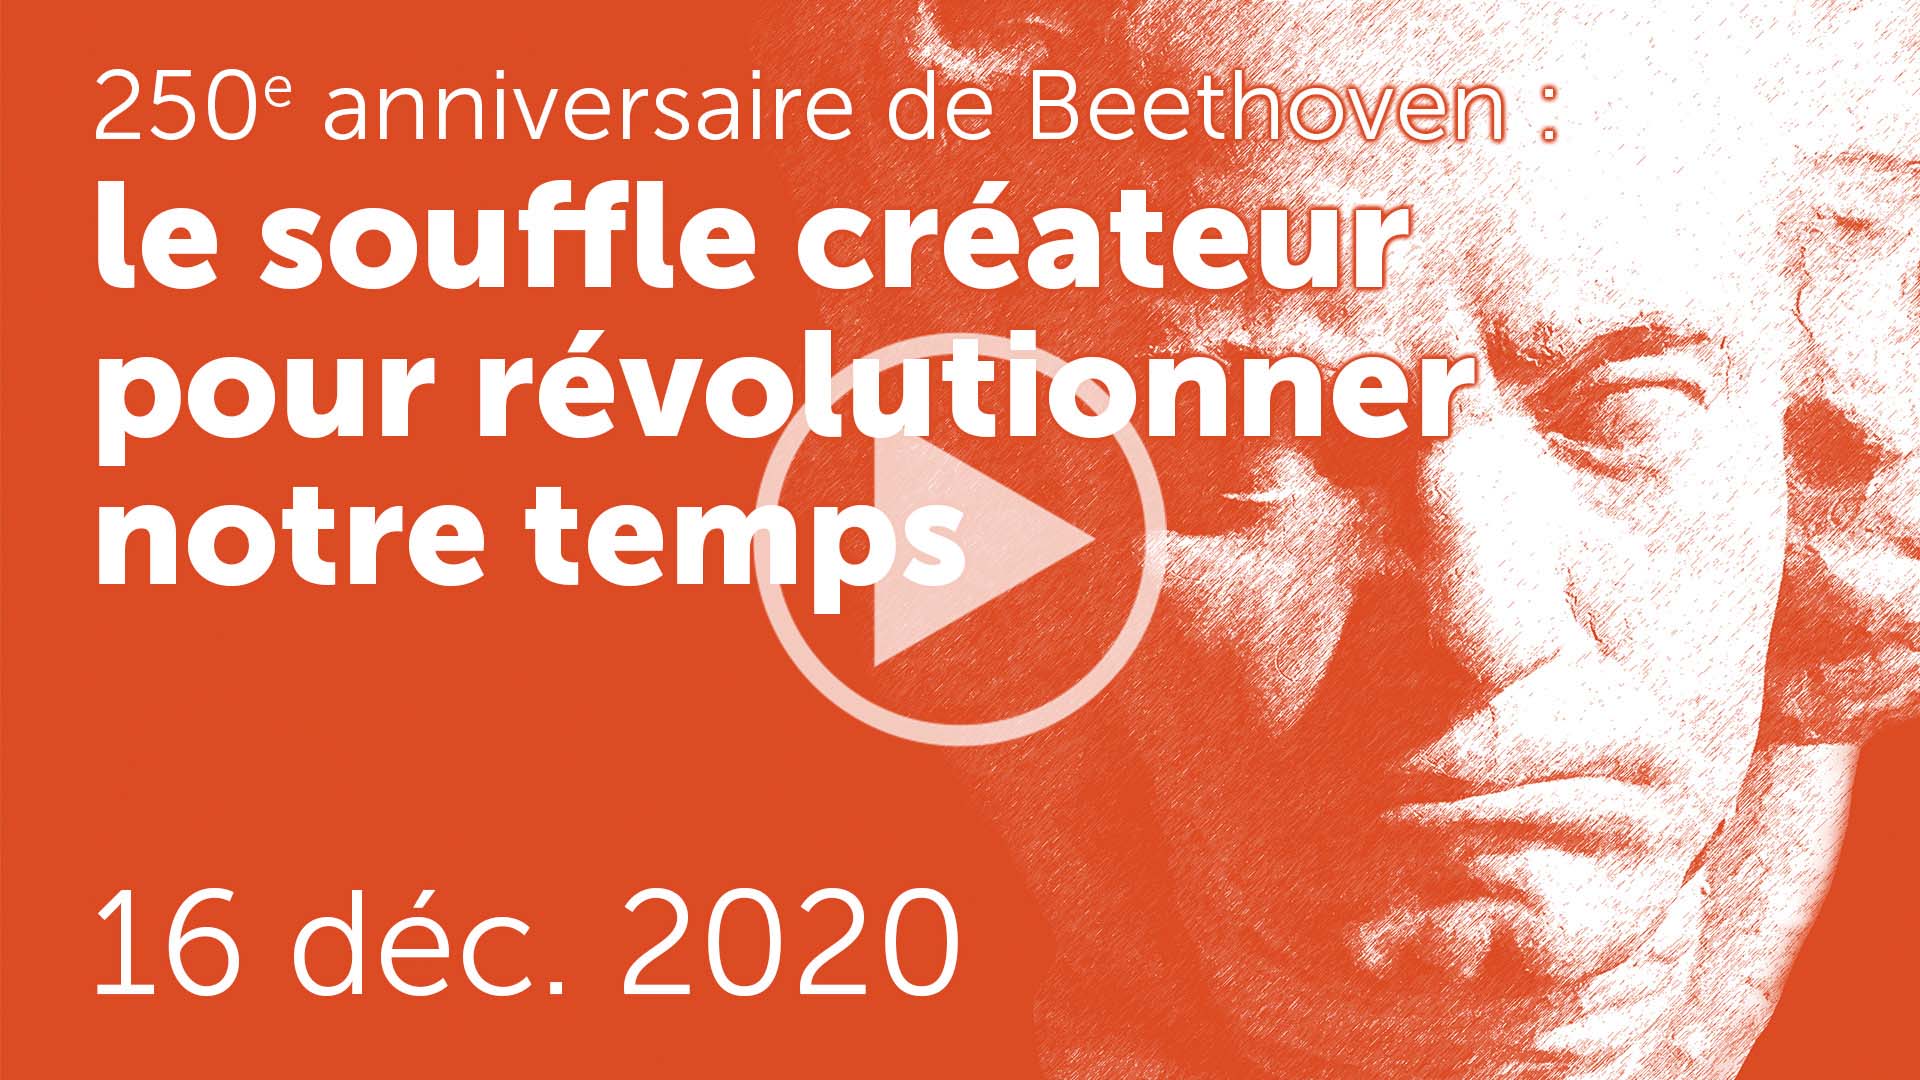 Beethoven : le souffle créateur pour révolutionner notre temps - Visioconférence S&P